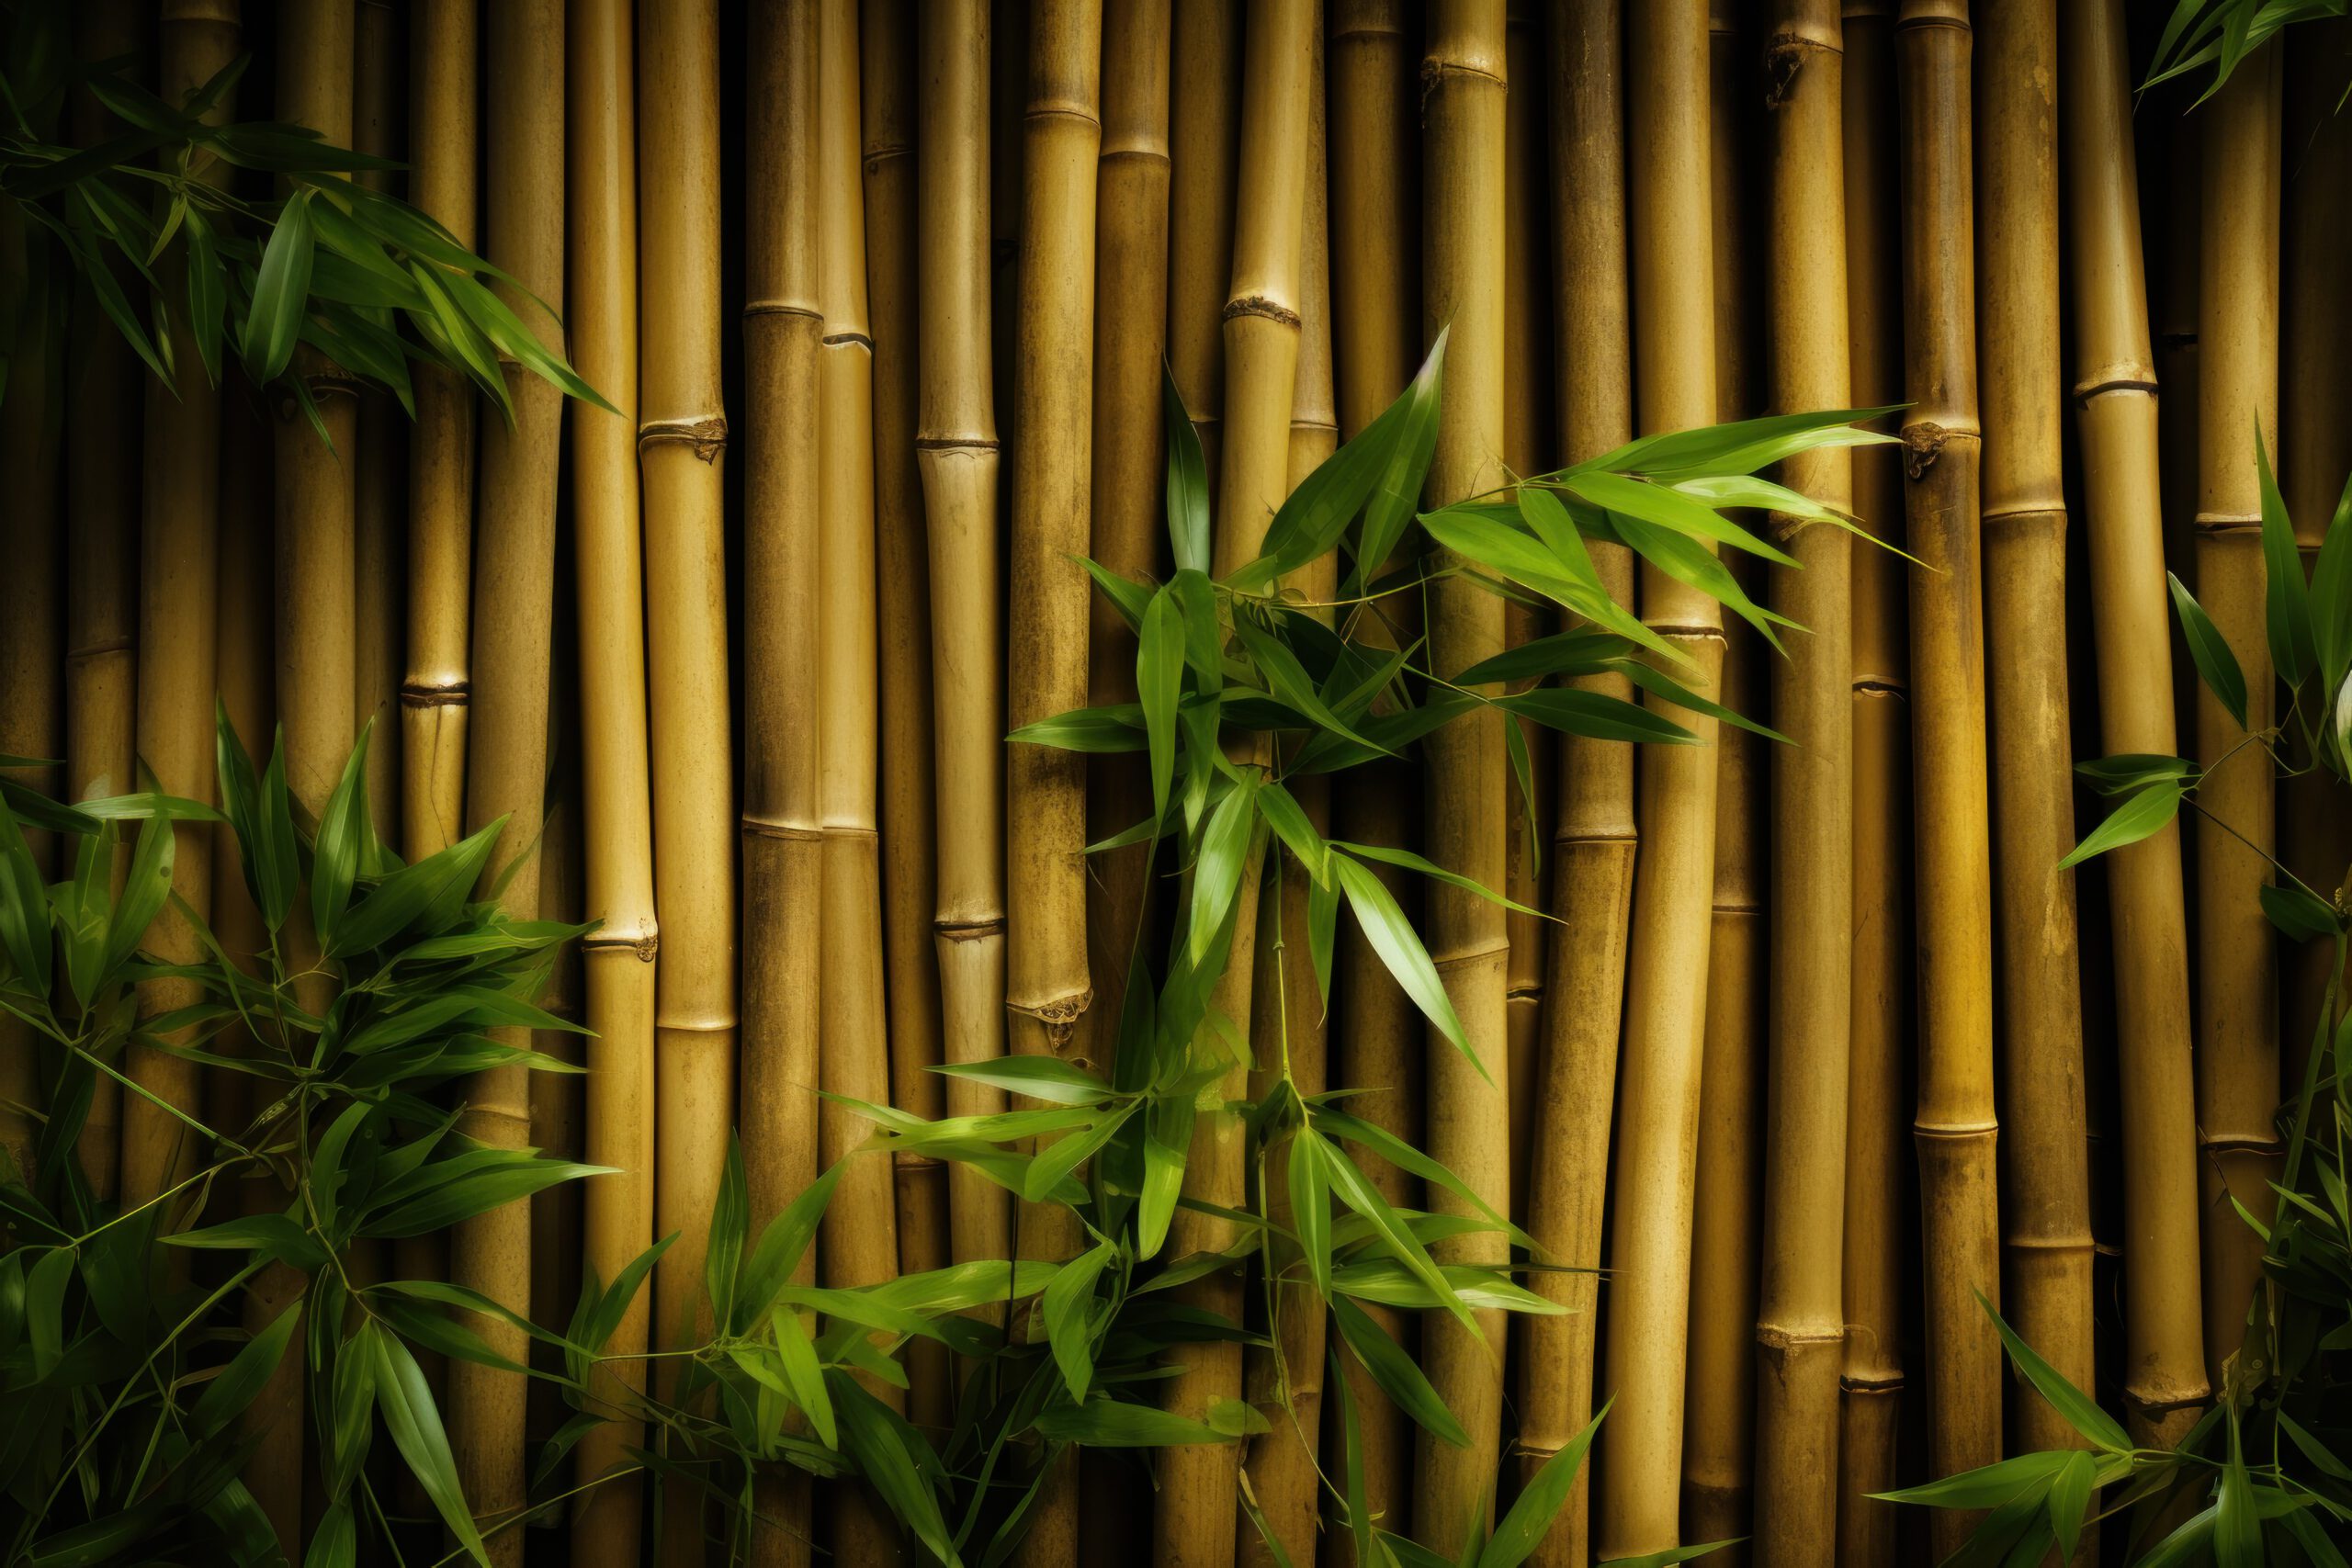 Na obrazku przedstawiony jest piękny bambusowy żywopłot, tworzący naturalną i zieloną barierę. Gęste, wyprostowane pędy bambusa tworzą harmonijną strukturę, zapewniając prywatność i ochronę. Ten wyjątkowy bambusowy żywopłot dodaje nie tylko estetyki, ale także tworzy atmosferę spokoju i bliskości z naturą